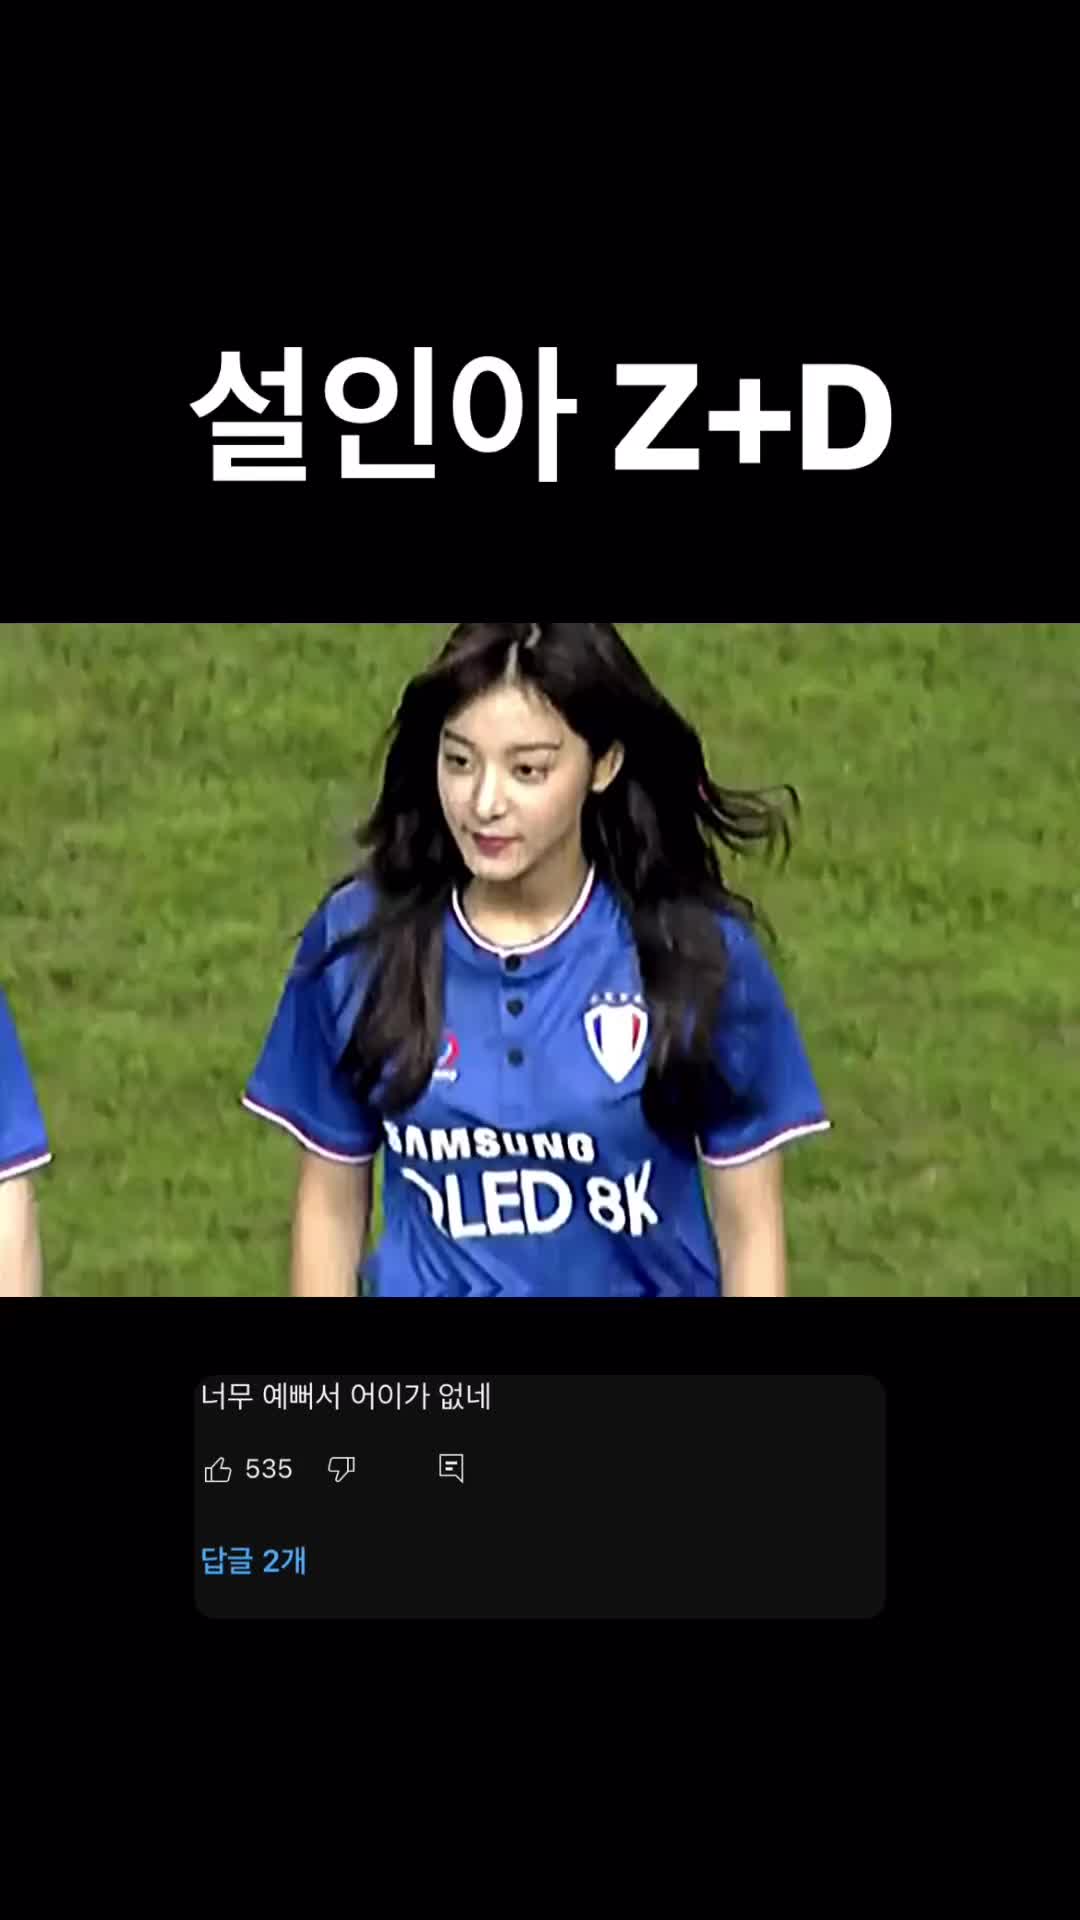  这颜值也是无敌了！韩国女星薛仁雅参加水原三星足球活动